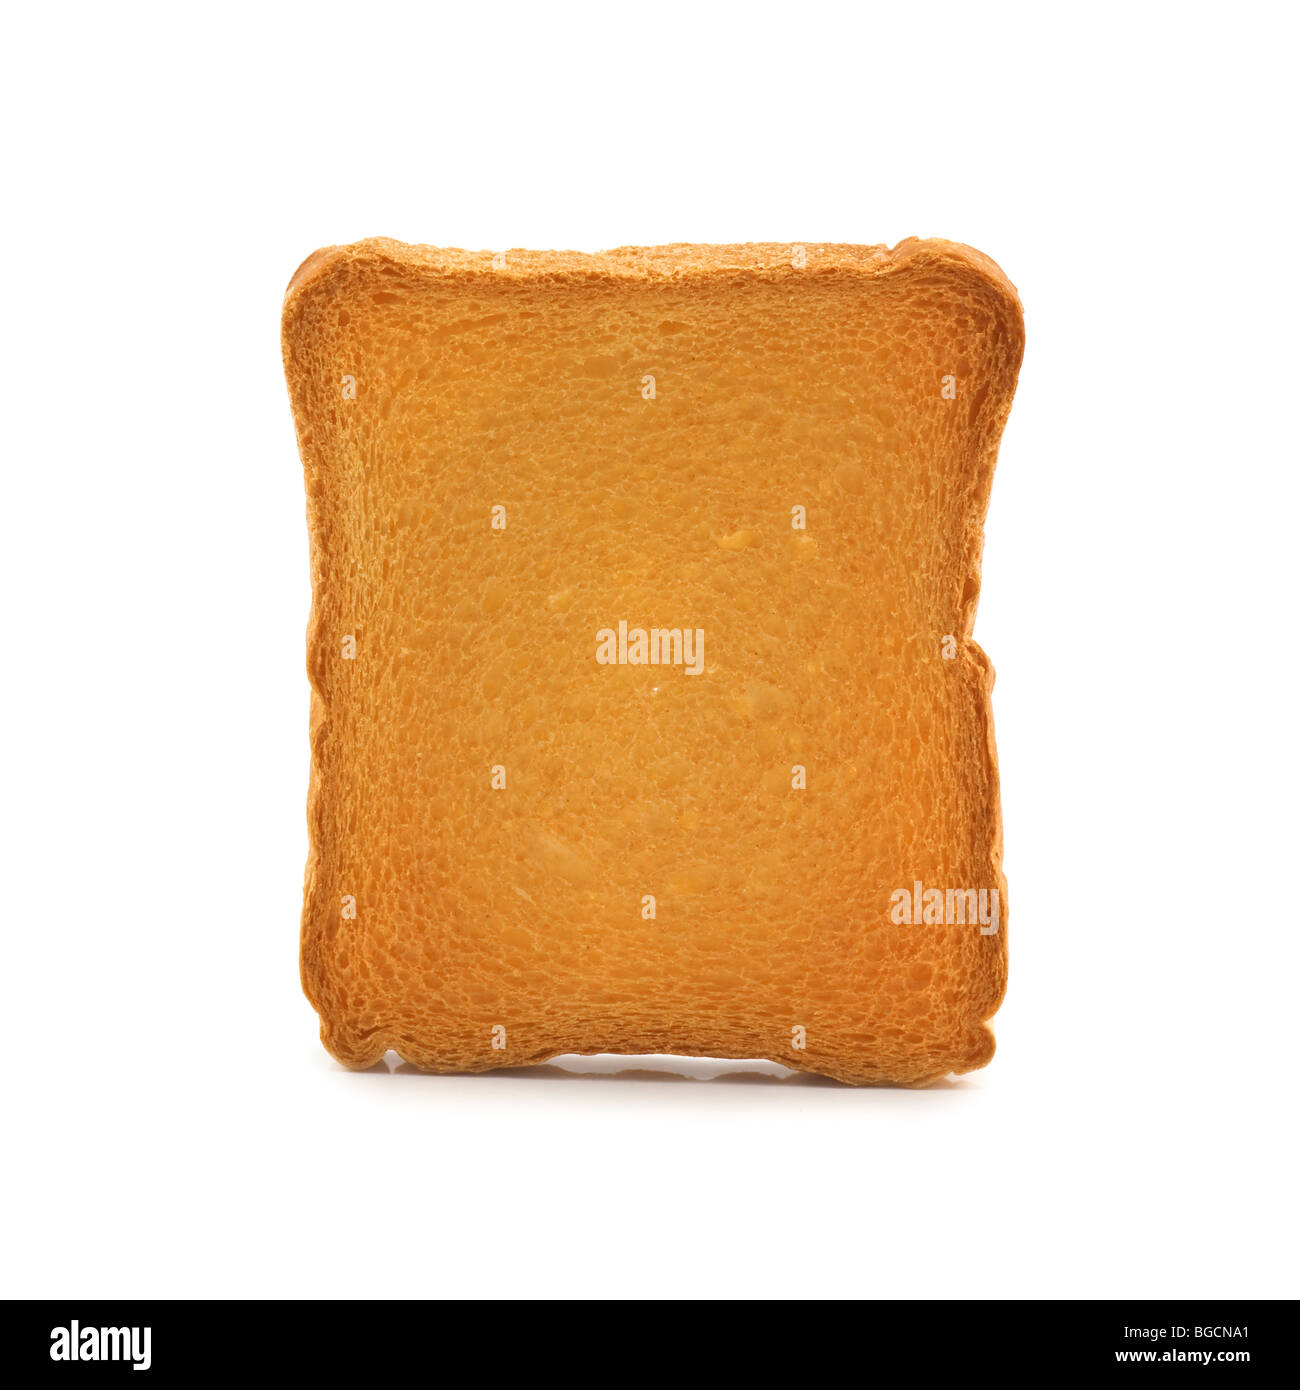 fried toast isolated Stock Photo